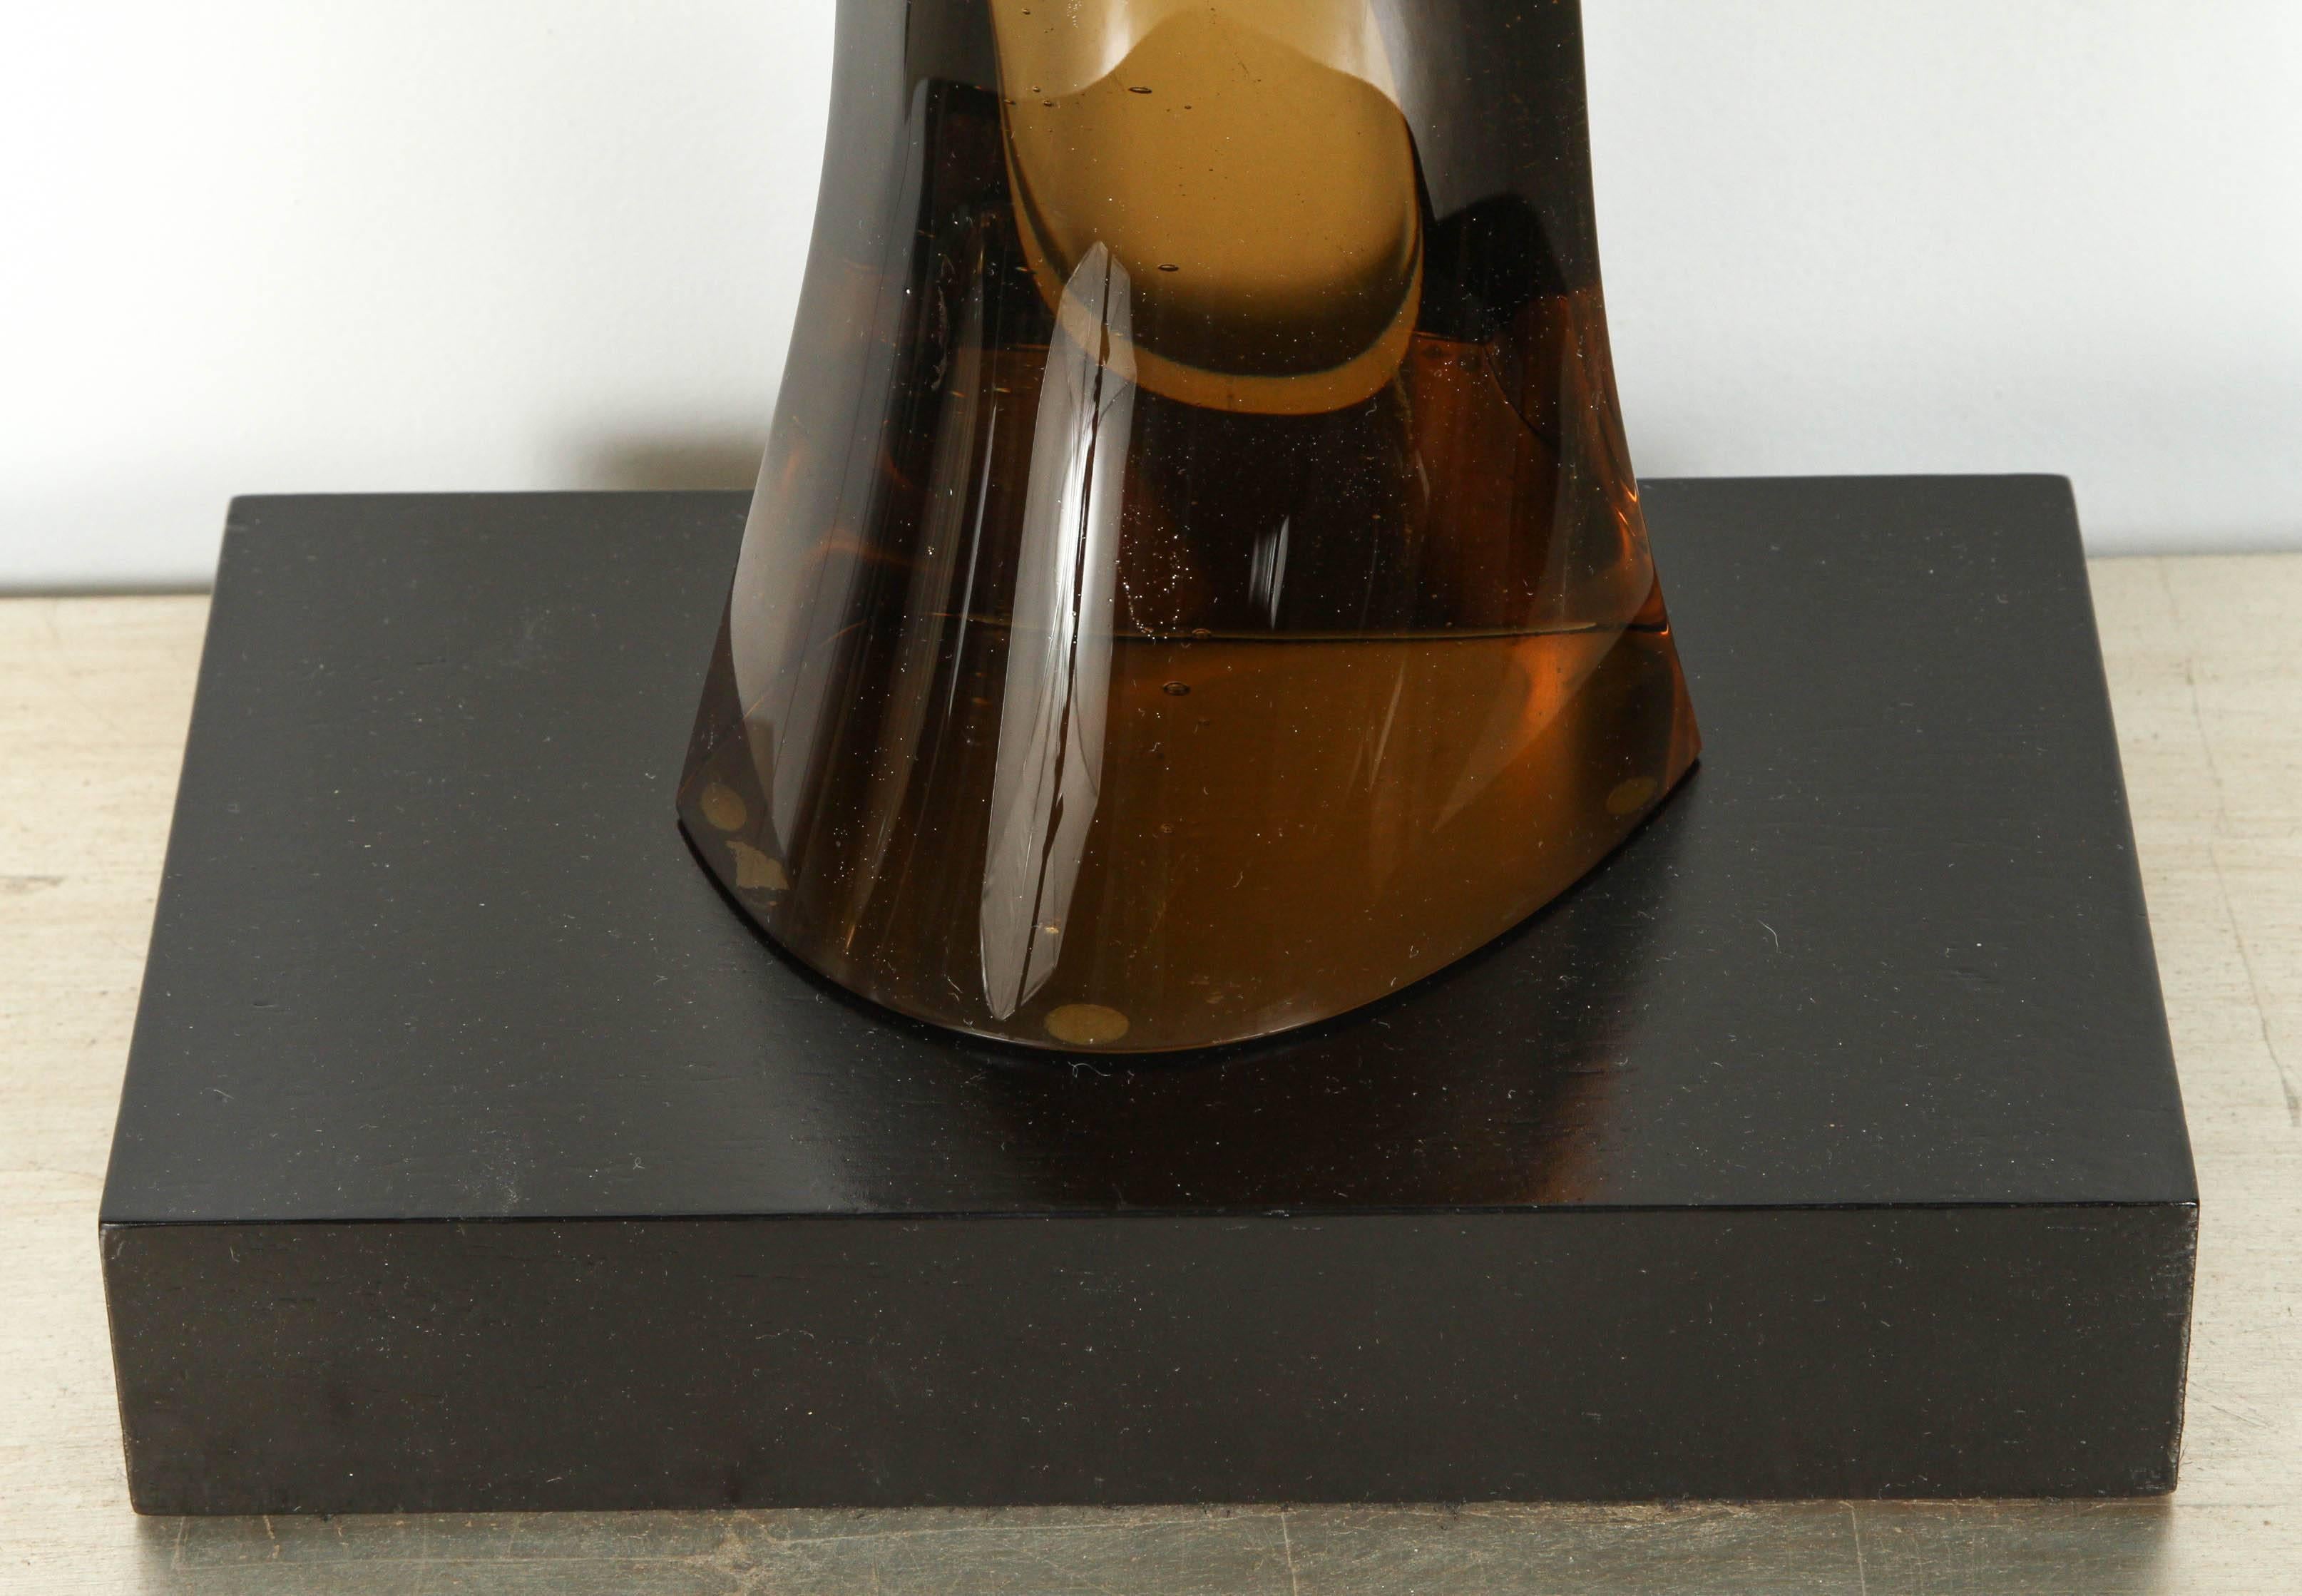 Sculpture élégante en verre fumé des années 1970, posée sur une base en bois noir. 
Le verre lisse ondule et s'effile à partir de la base. Il passe de l'ambre foncé à presque transparent au sommet.